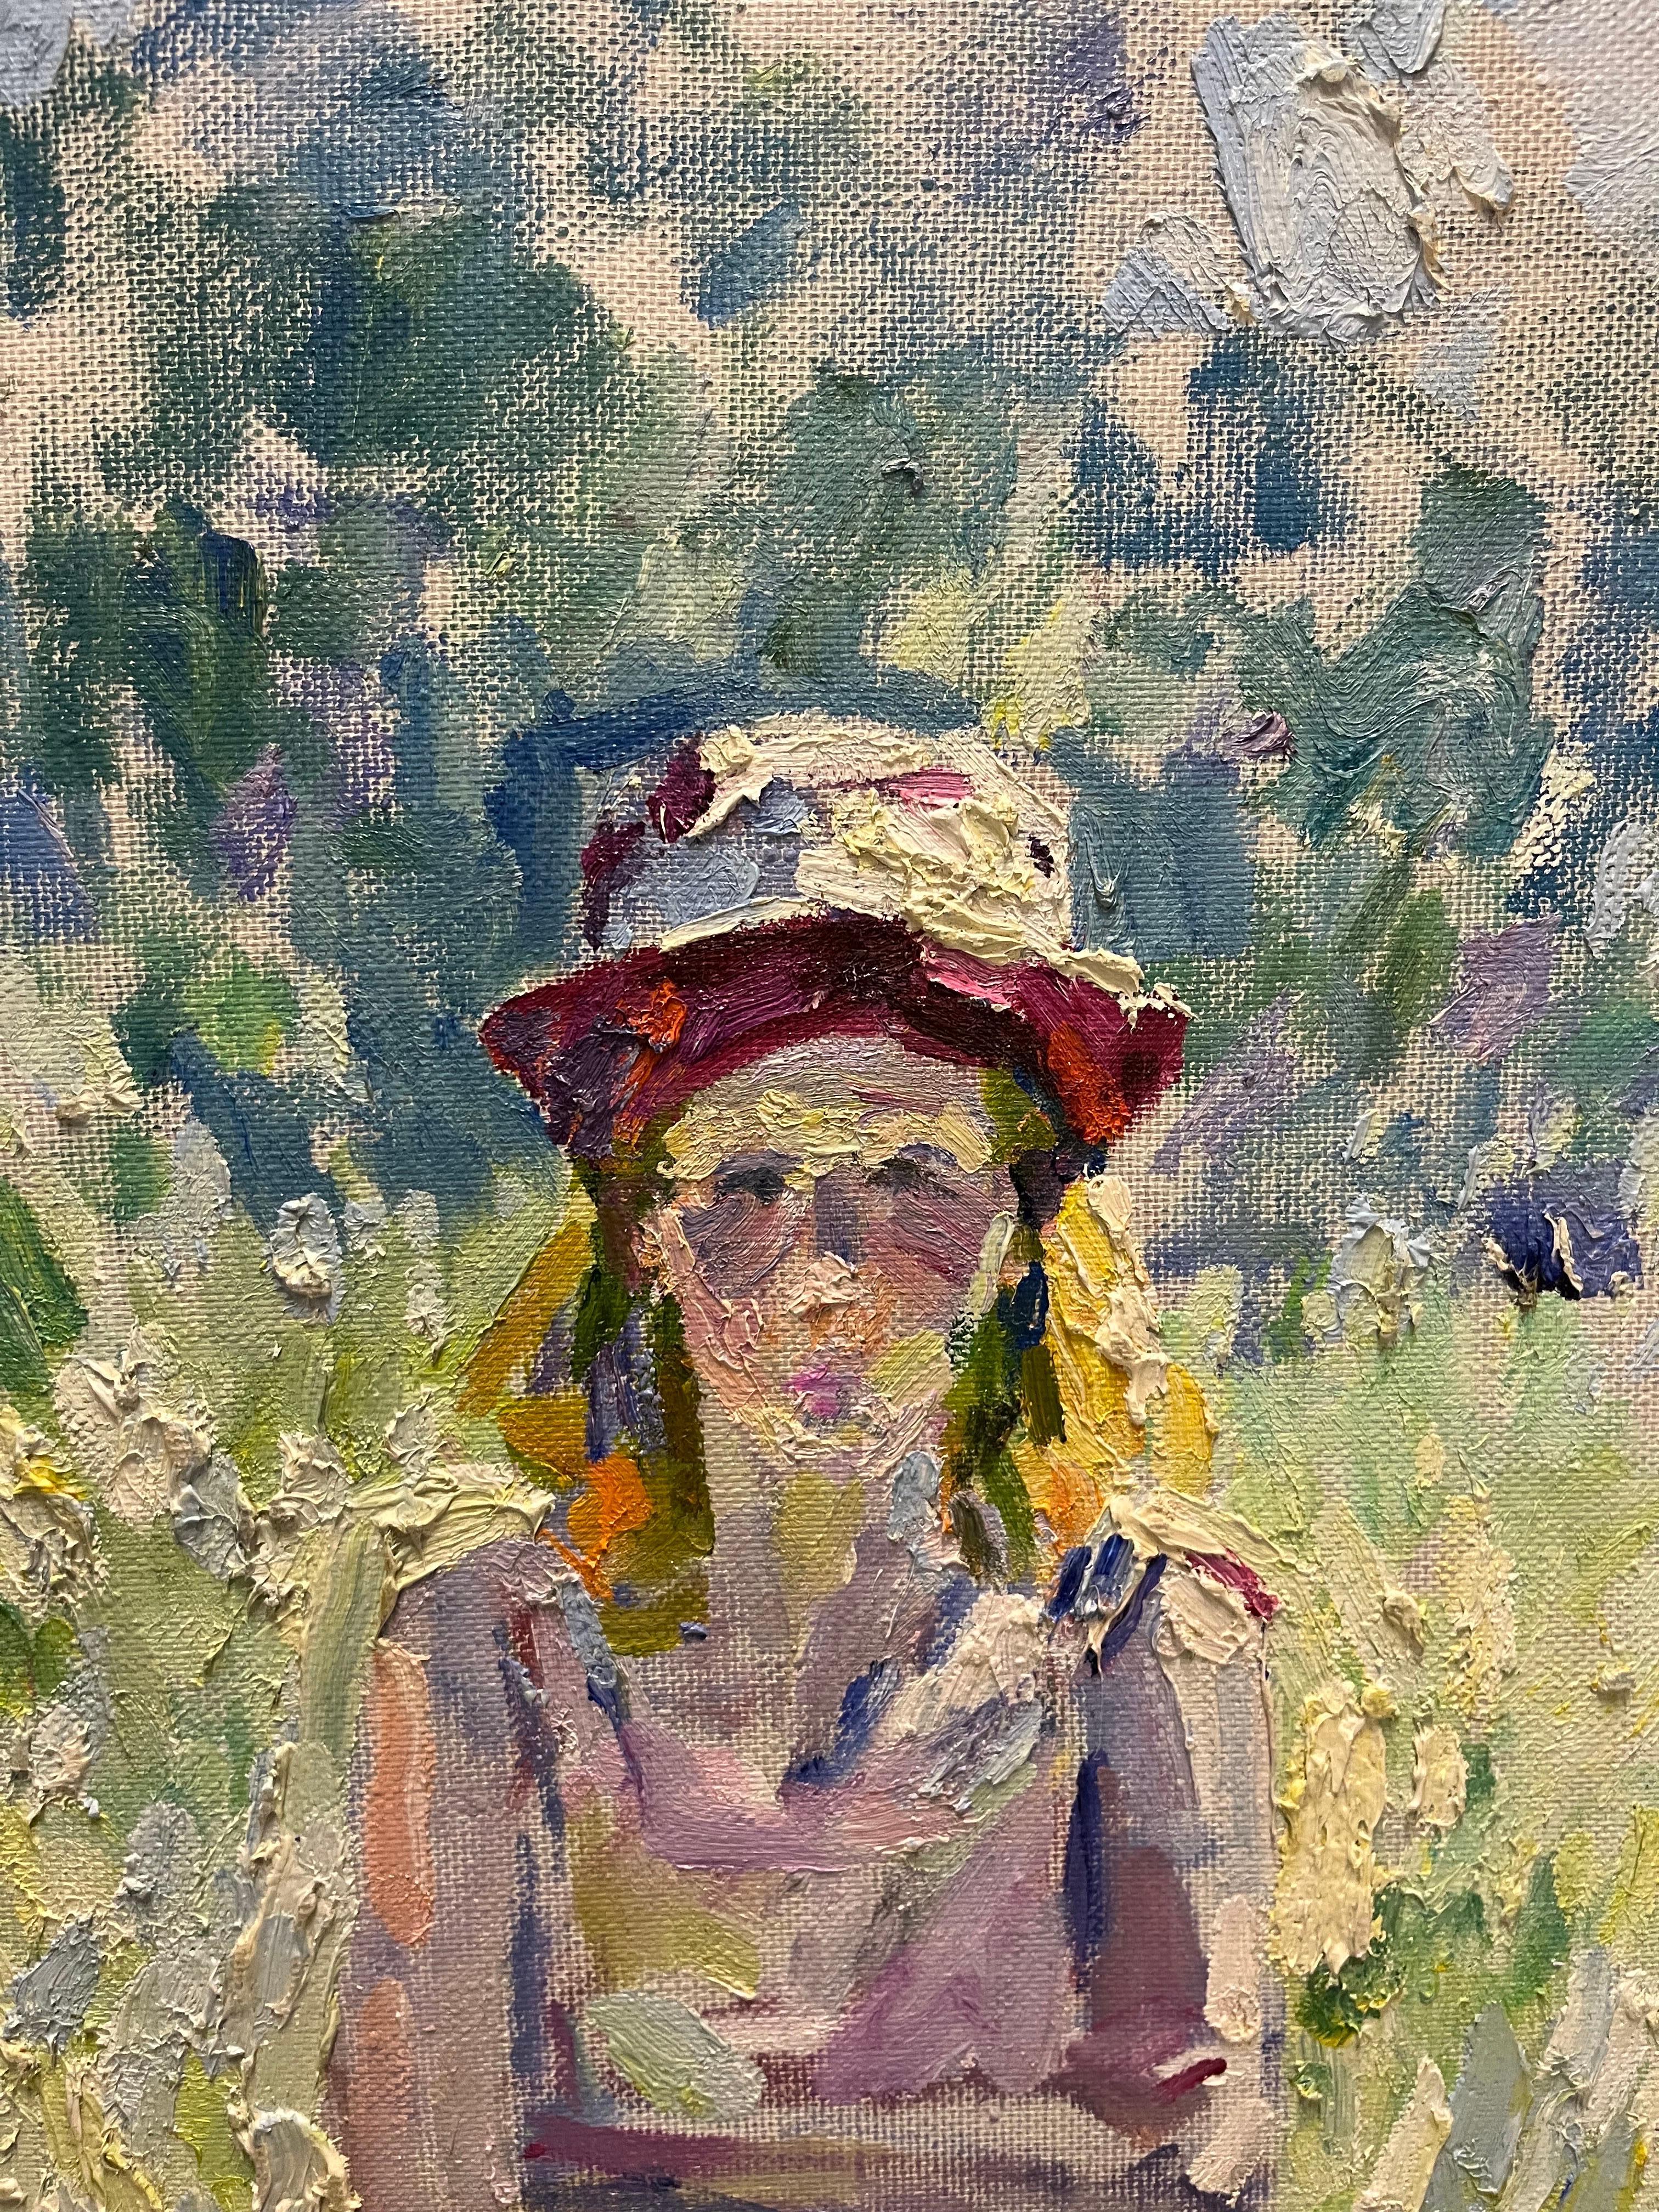 Jeune fille avec une cape rose  100 cm x 93 cm  2001 - Impressionnisme Painting par Georgij Moroz